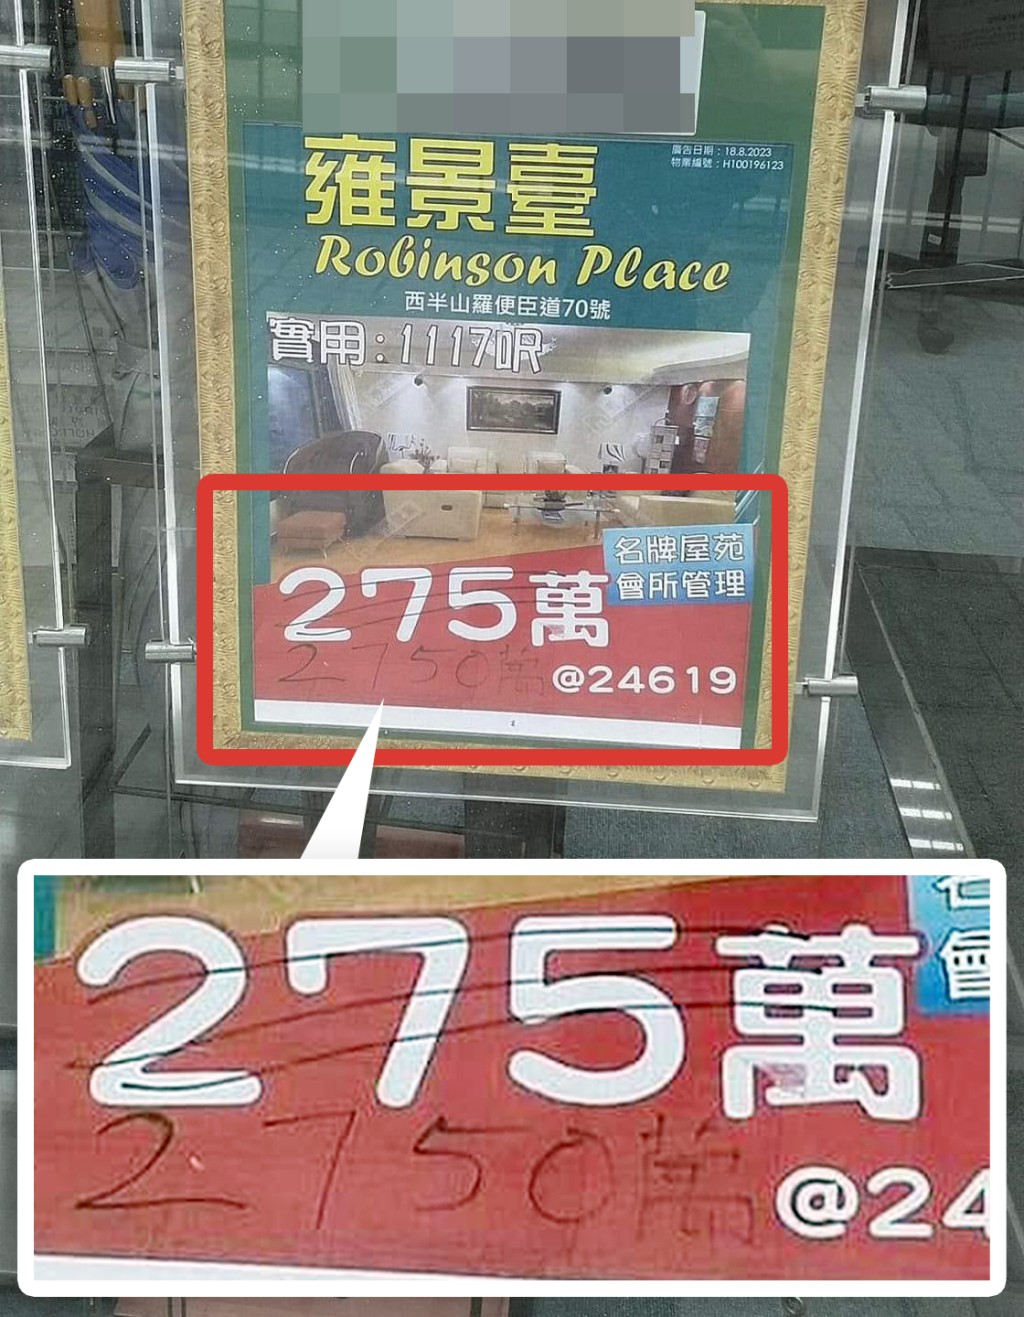 放大看，原来广告银码，以原子笔划去原有价钱，写上「2750万」，换言之，真实售价是2750万元。